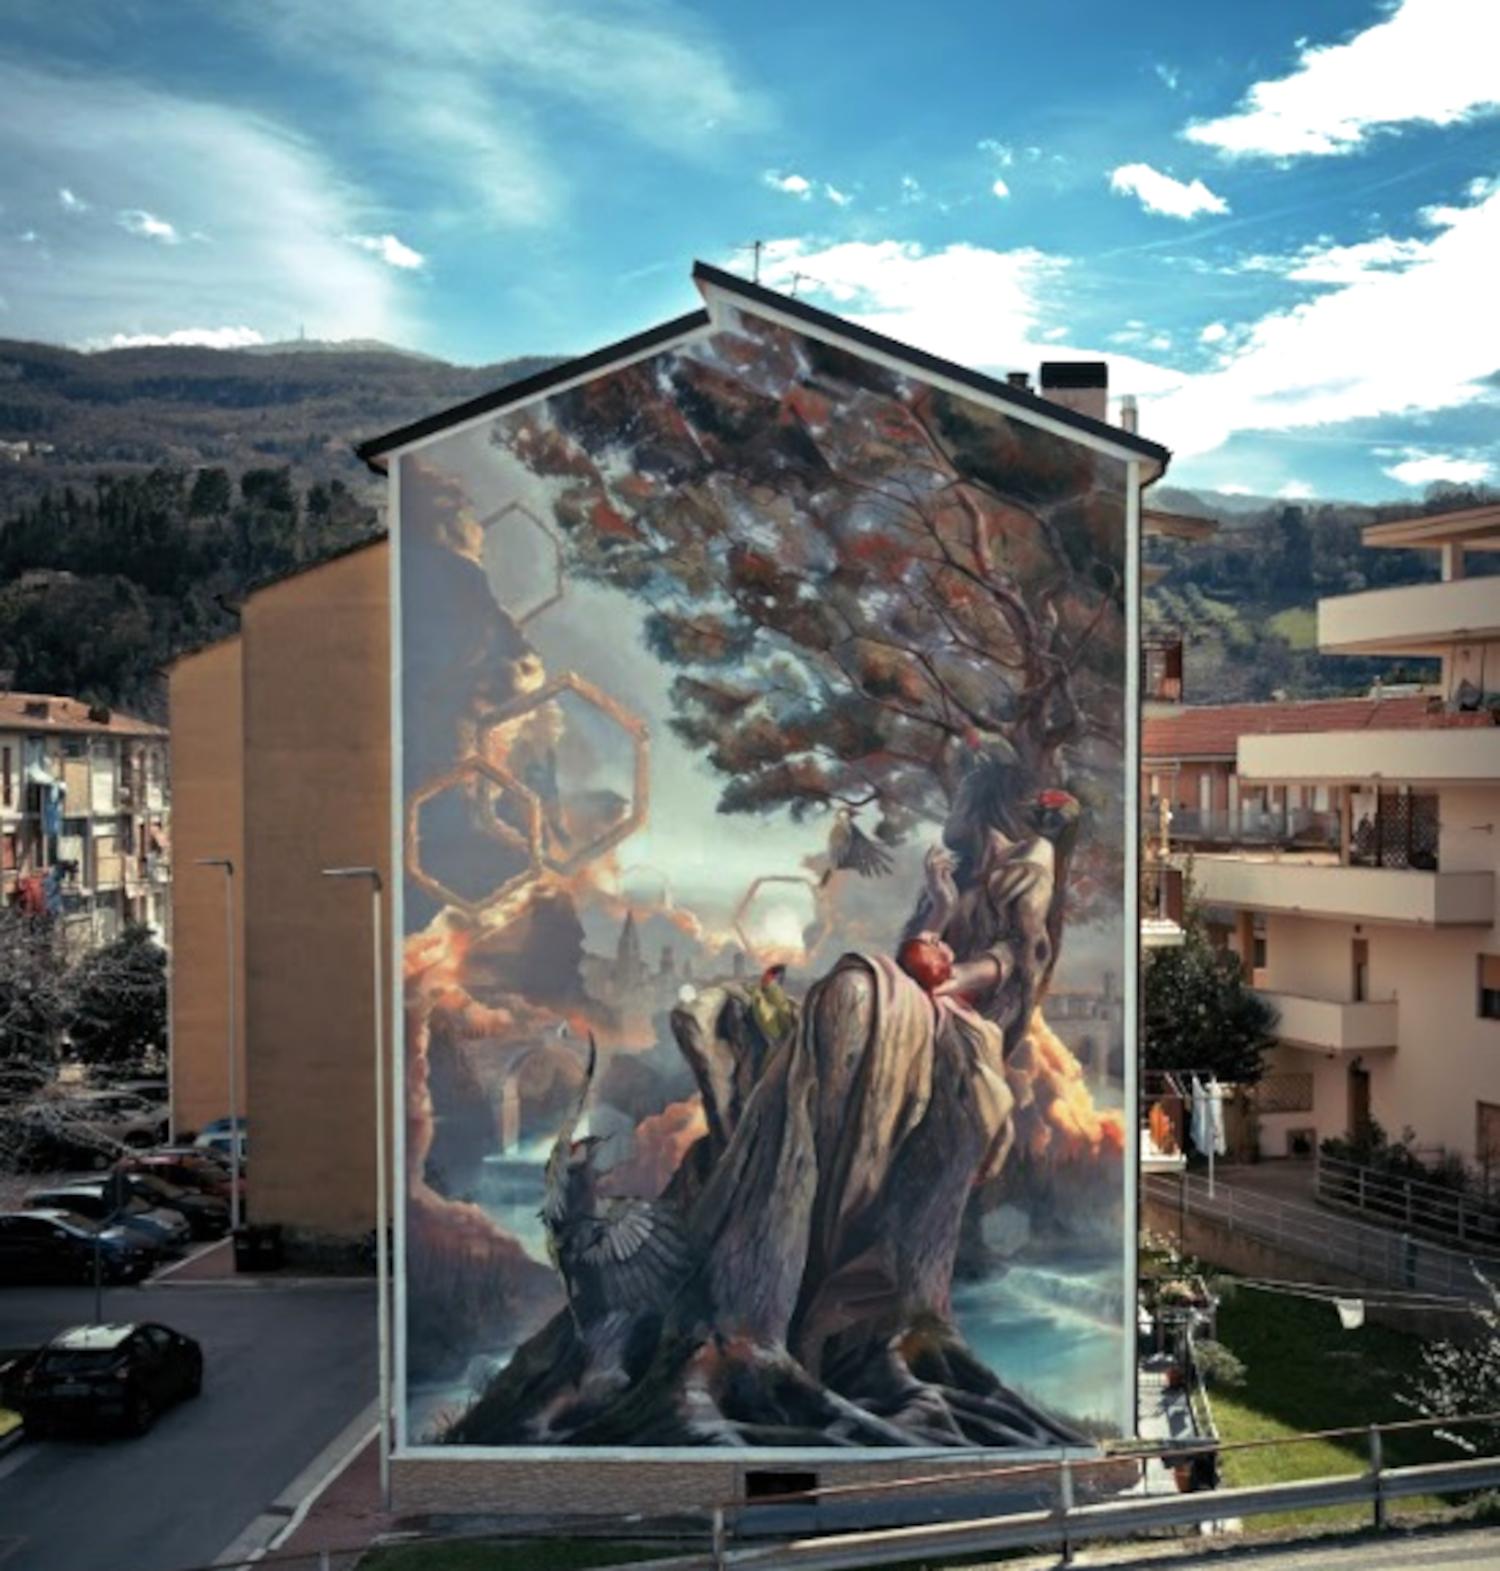 'Arte Pubblica. Generazioni interconnesse': concluso il progetto di arte urbana promossa dal Comune di Ascoli Piceno, che ha arricchito il patrimonio artistico 